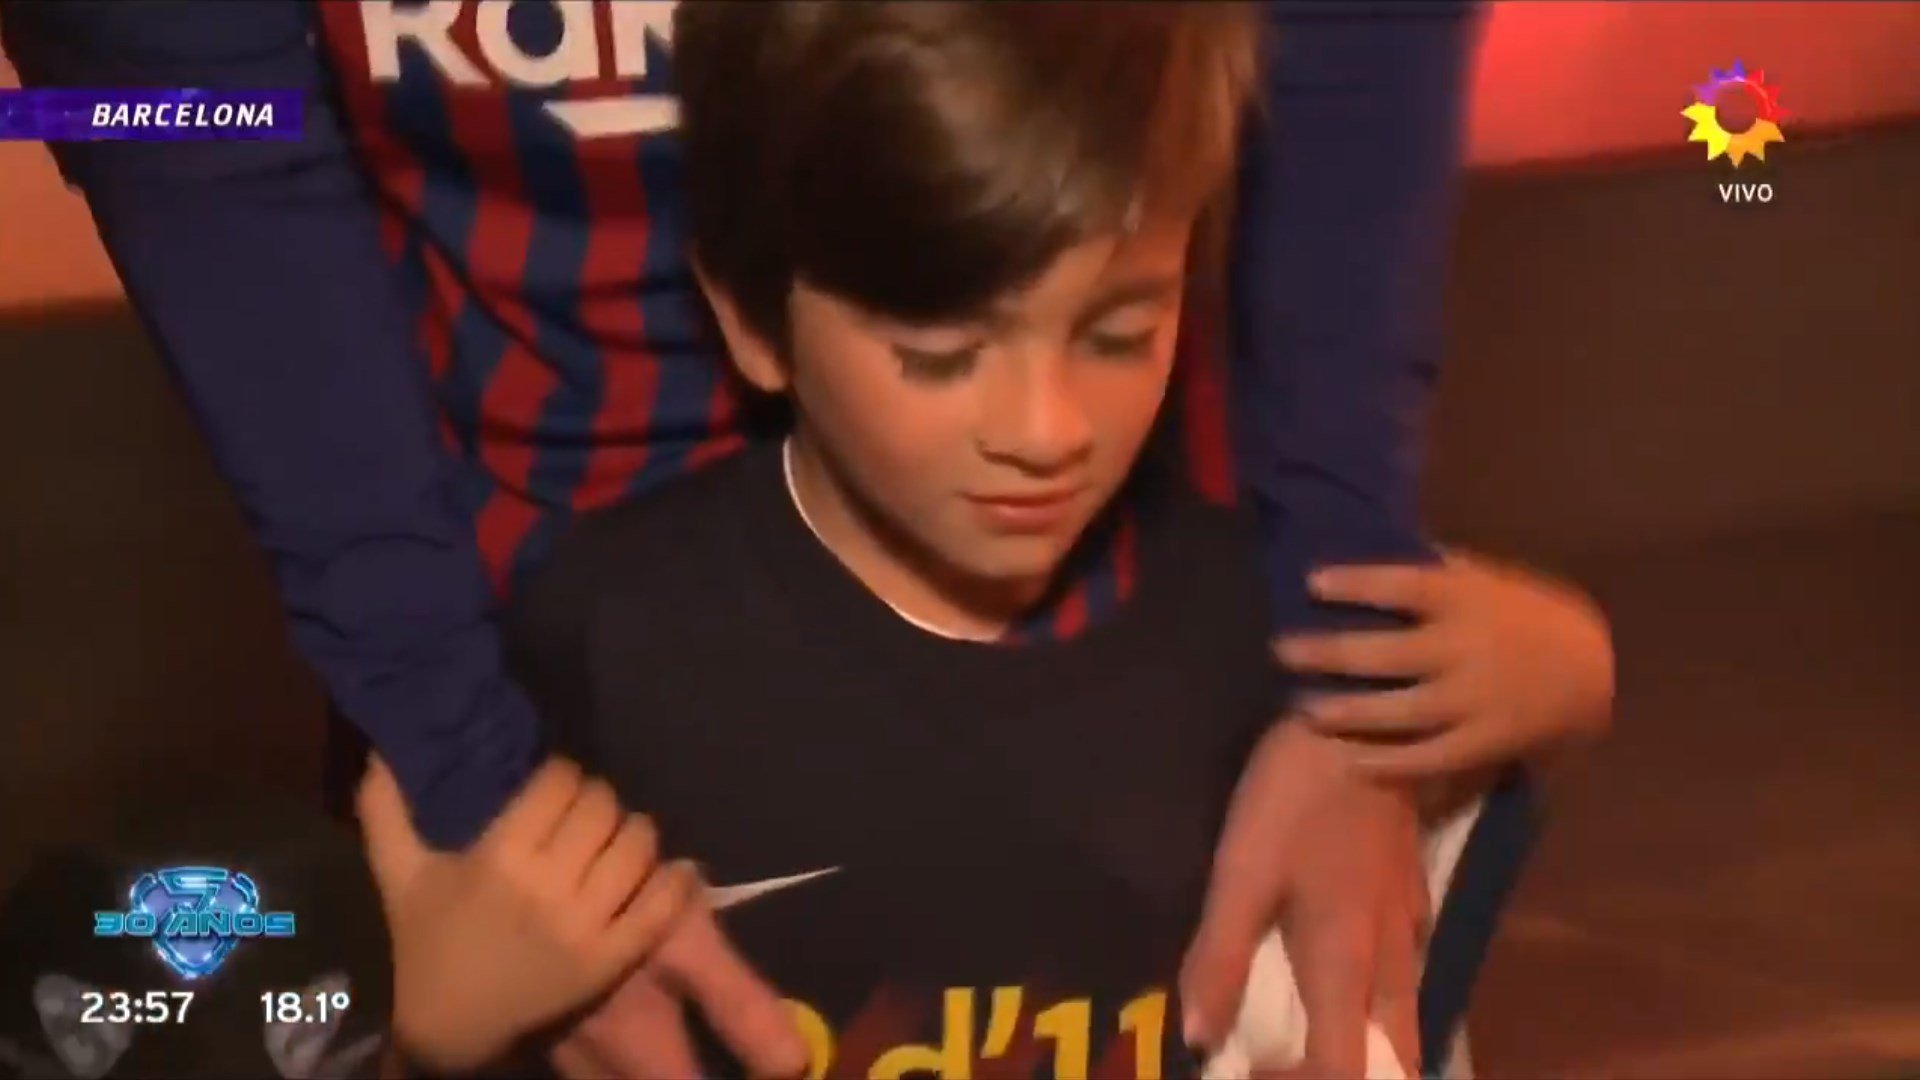 La emotiva respuesta de los niños argentinos al hijo de Messi: "Queremos a tu padre"